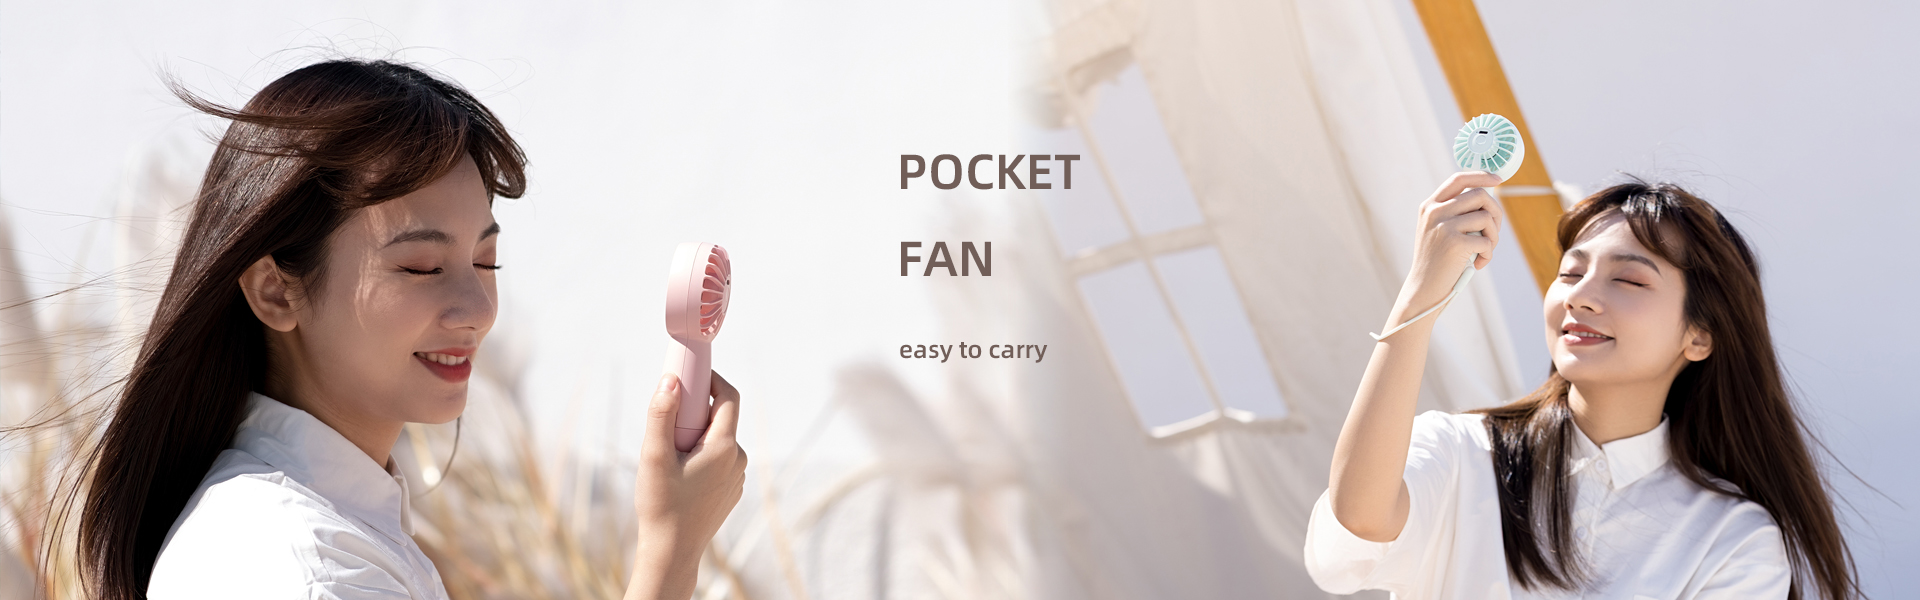  Pocket Fan